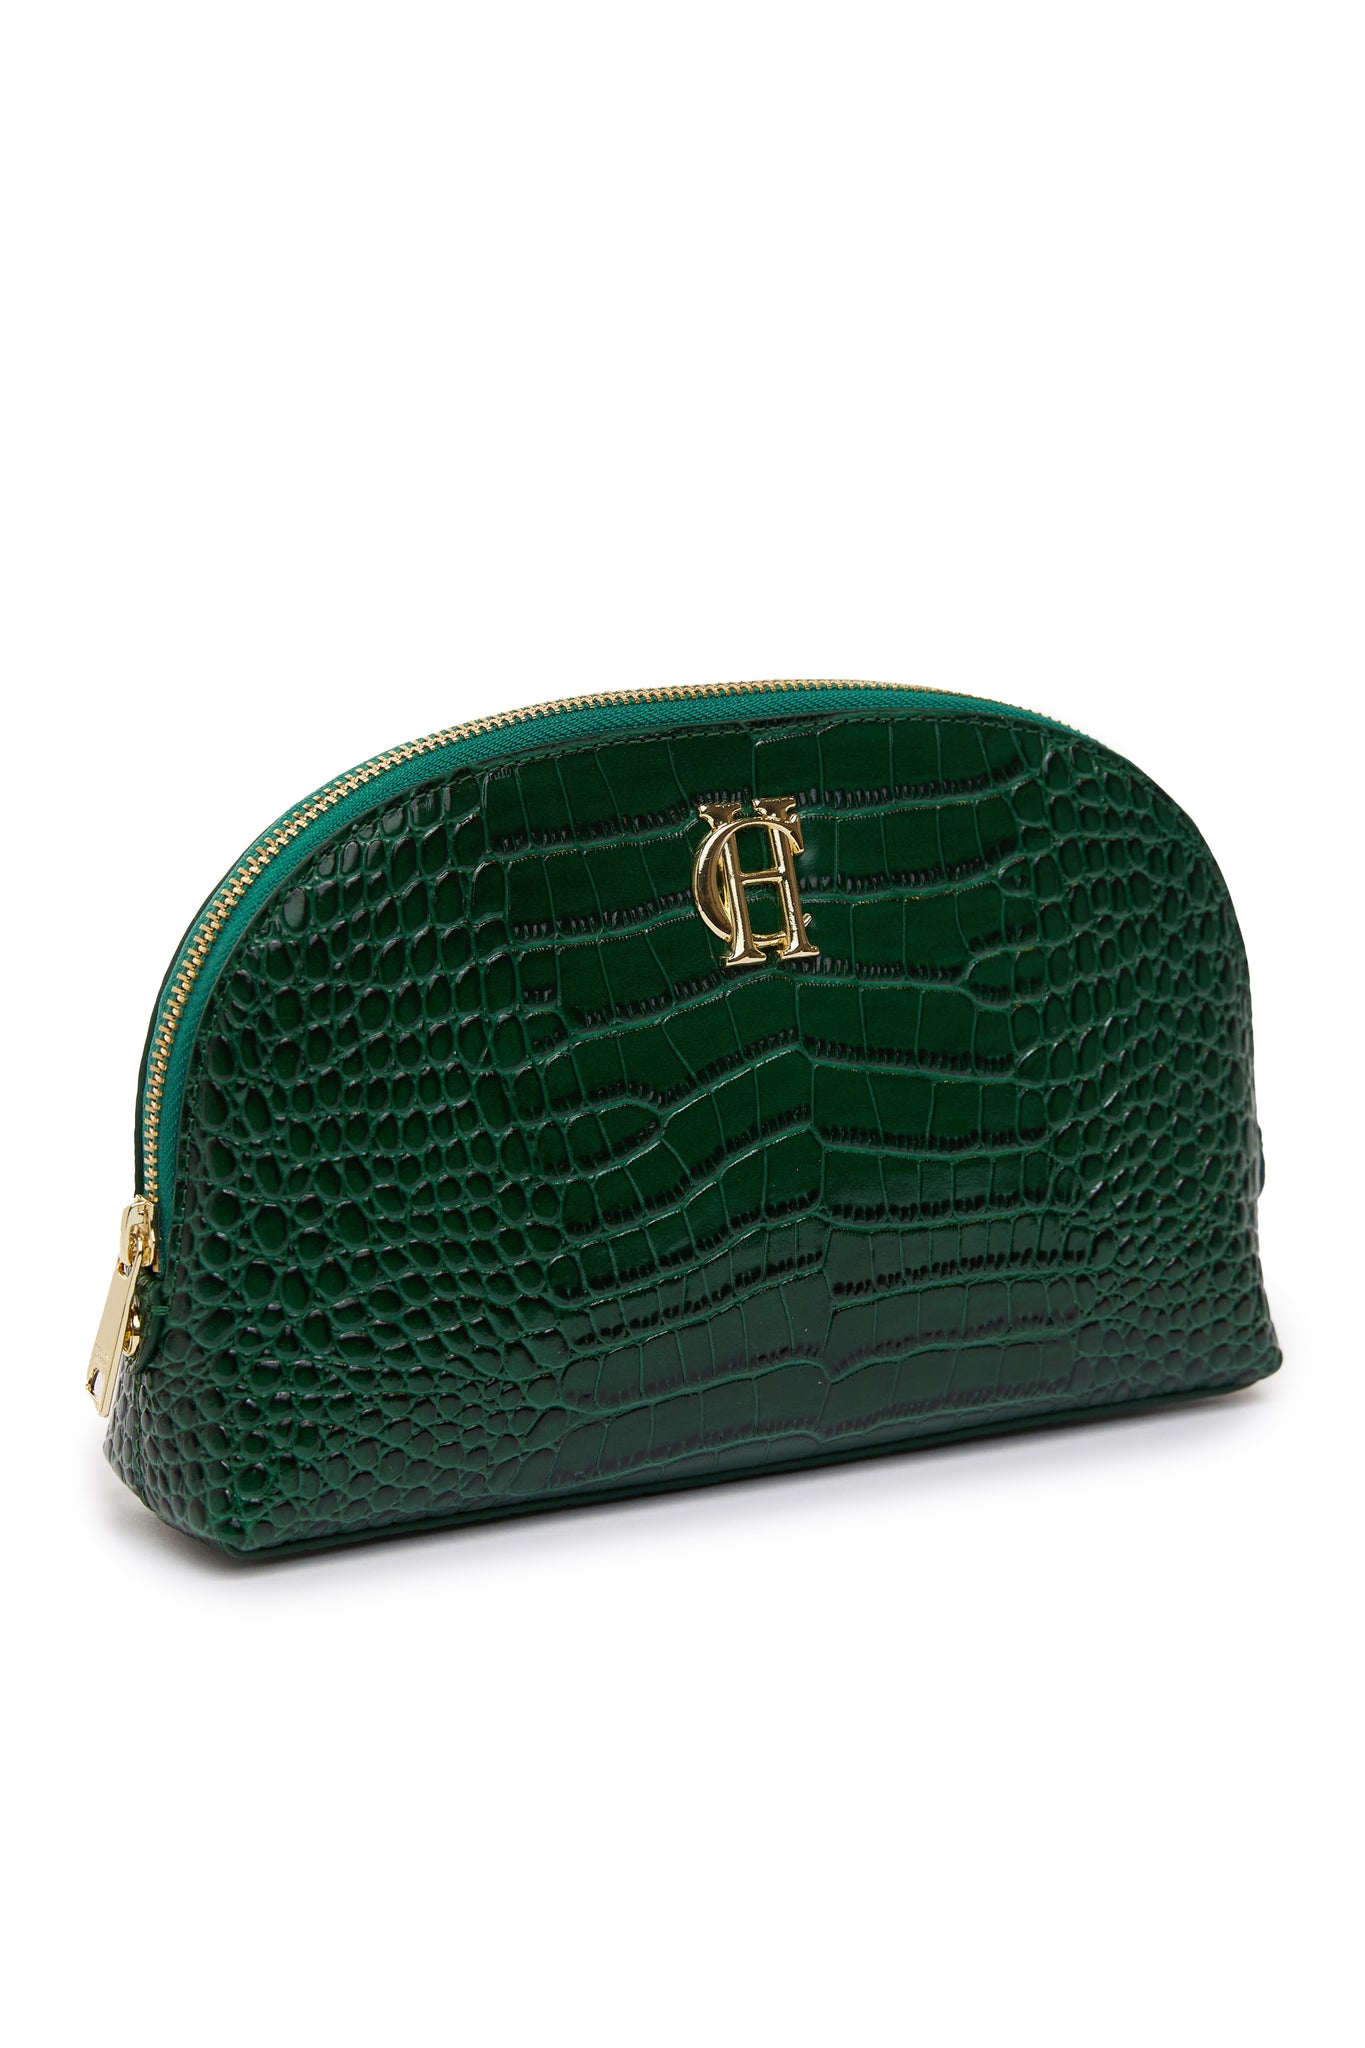 Chelsea Makeup Bag (Emerald Croc)